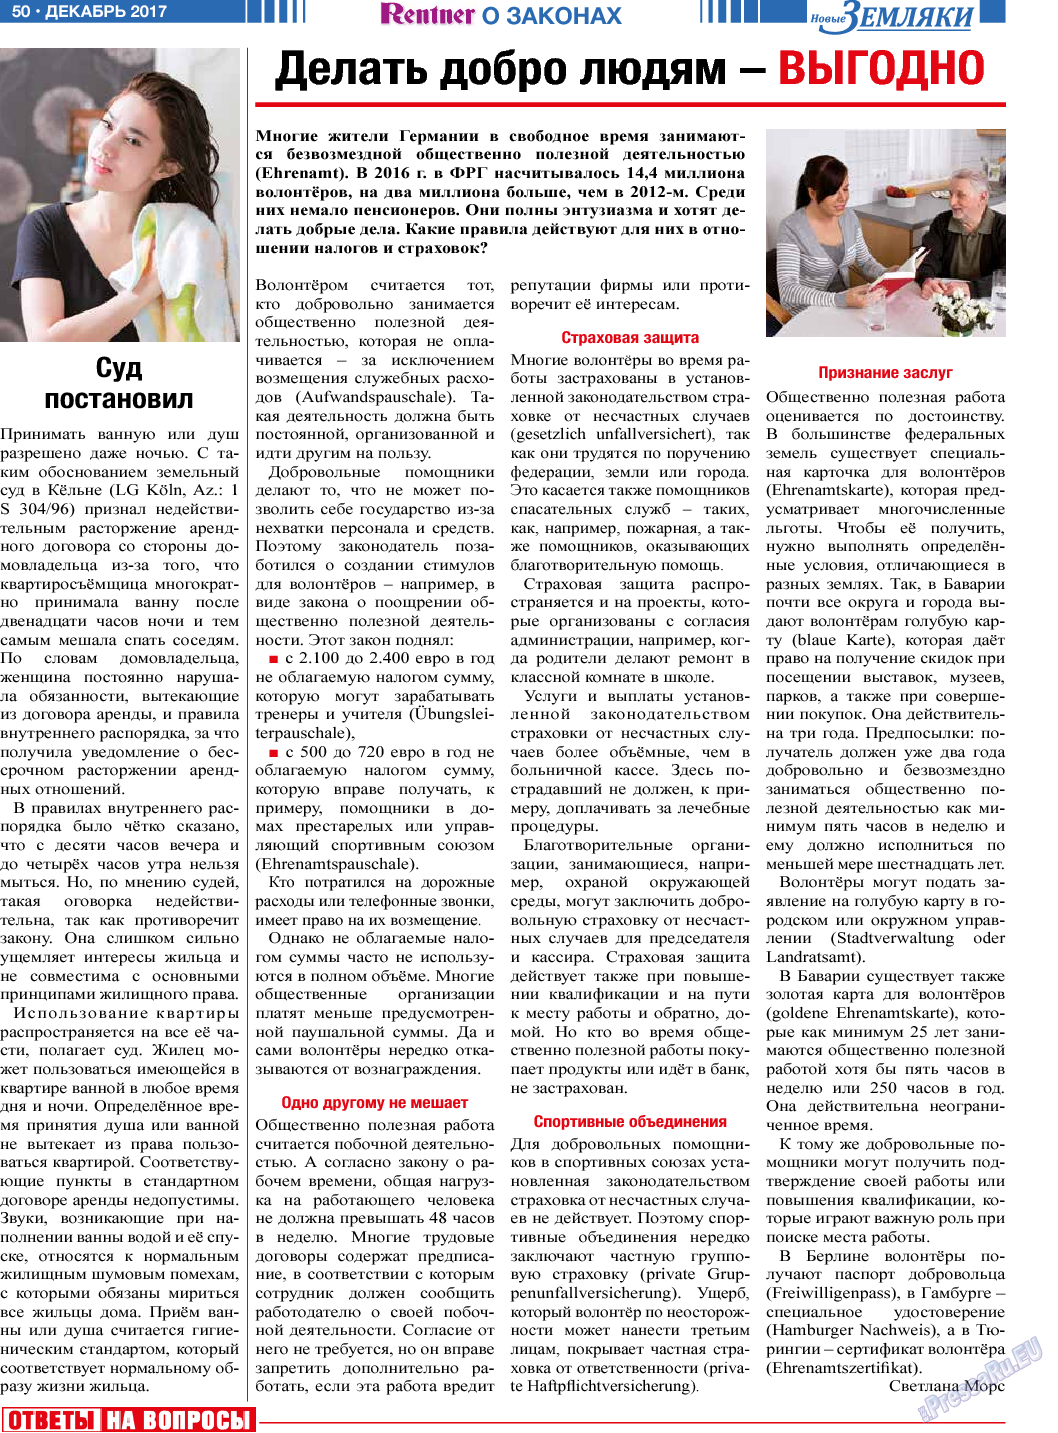 Новые Земляки, газета. 2017 №12 стр.50